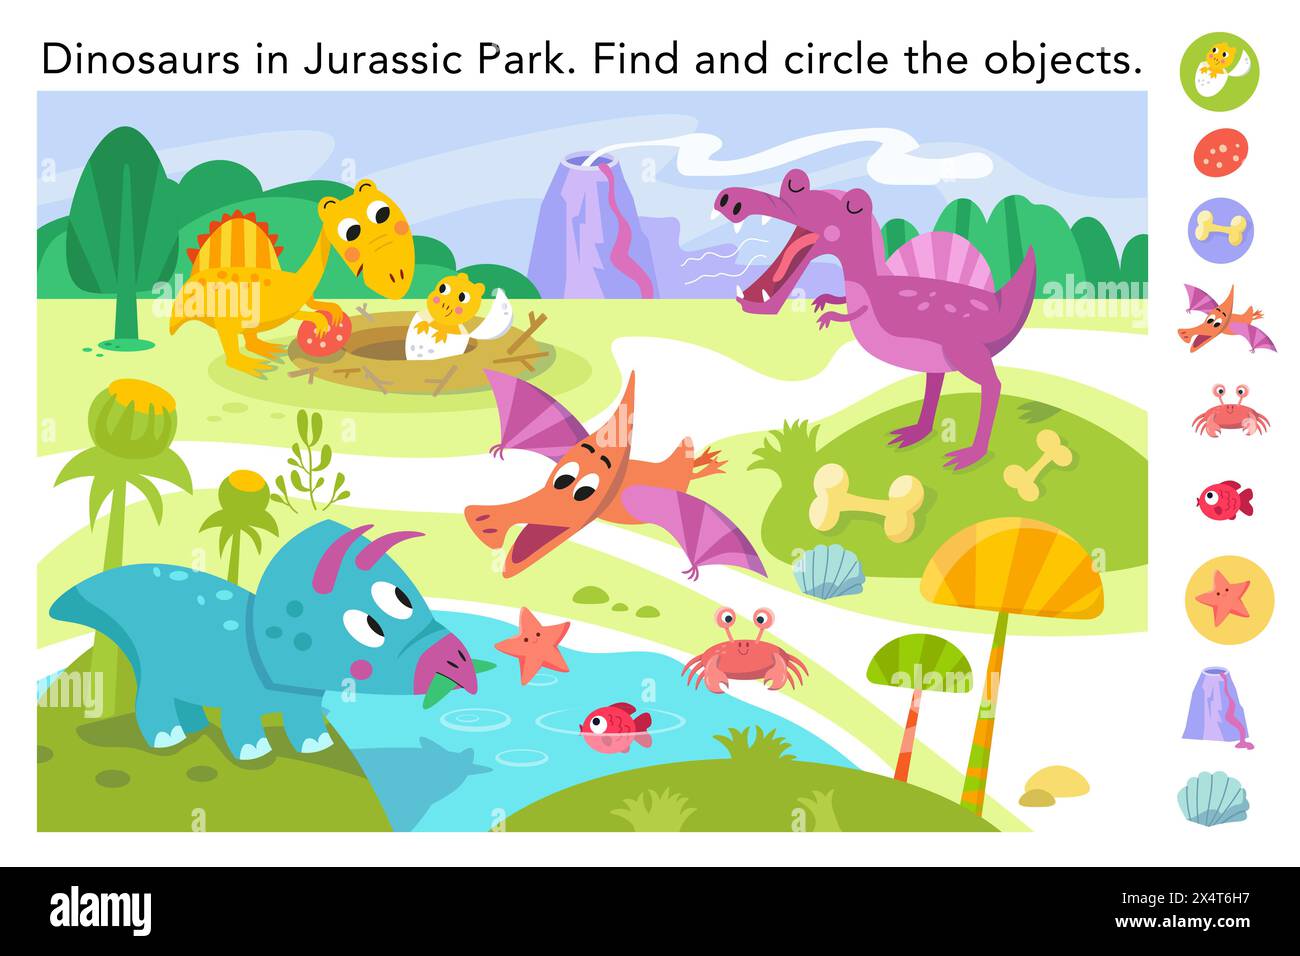 Trouvez des objets cachés dans l'image. Jeu de puzzle éducatif pour les enfants. Dinosaures simples plats mignons dans Jurassic Park. Illustration couleur vectorielle. Dessin animé Illustration de Vecteur